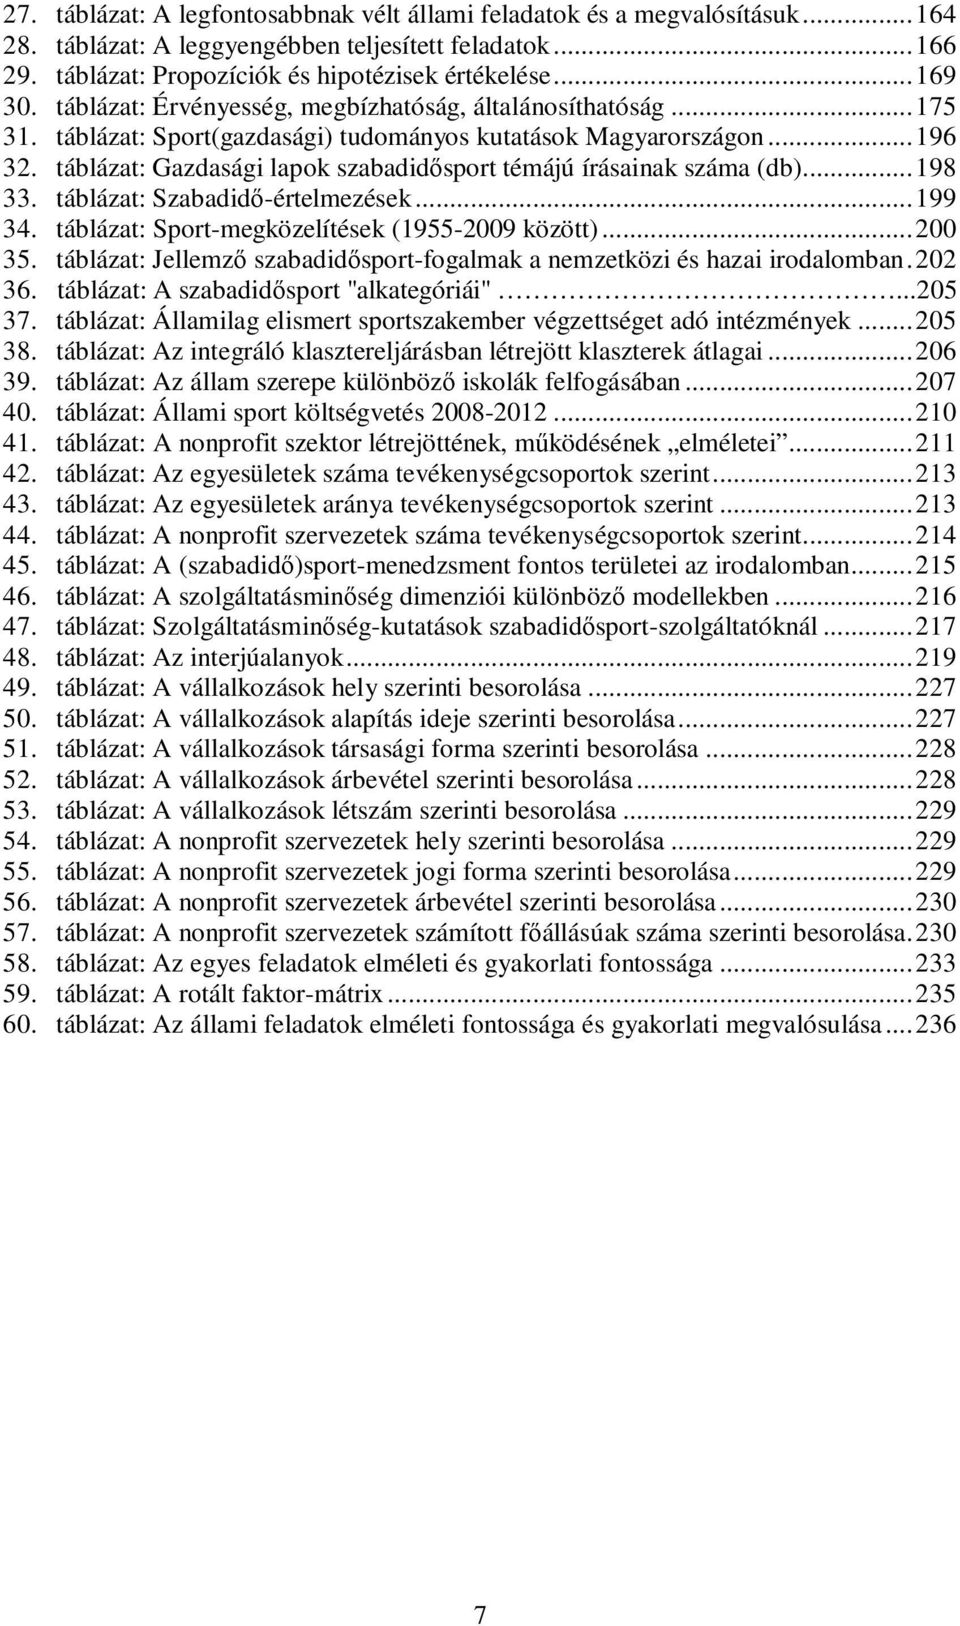 táblázat: Gazdasági lapok szabadidısport témájú írásainak száma (db)...198 33. táblázat: Szabadidı-értelmezések...199 34. táblázat: Sport-megközelítések (1955-2009 között)...200 35.